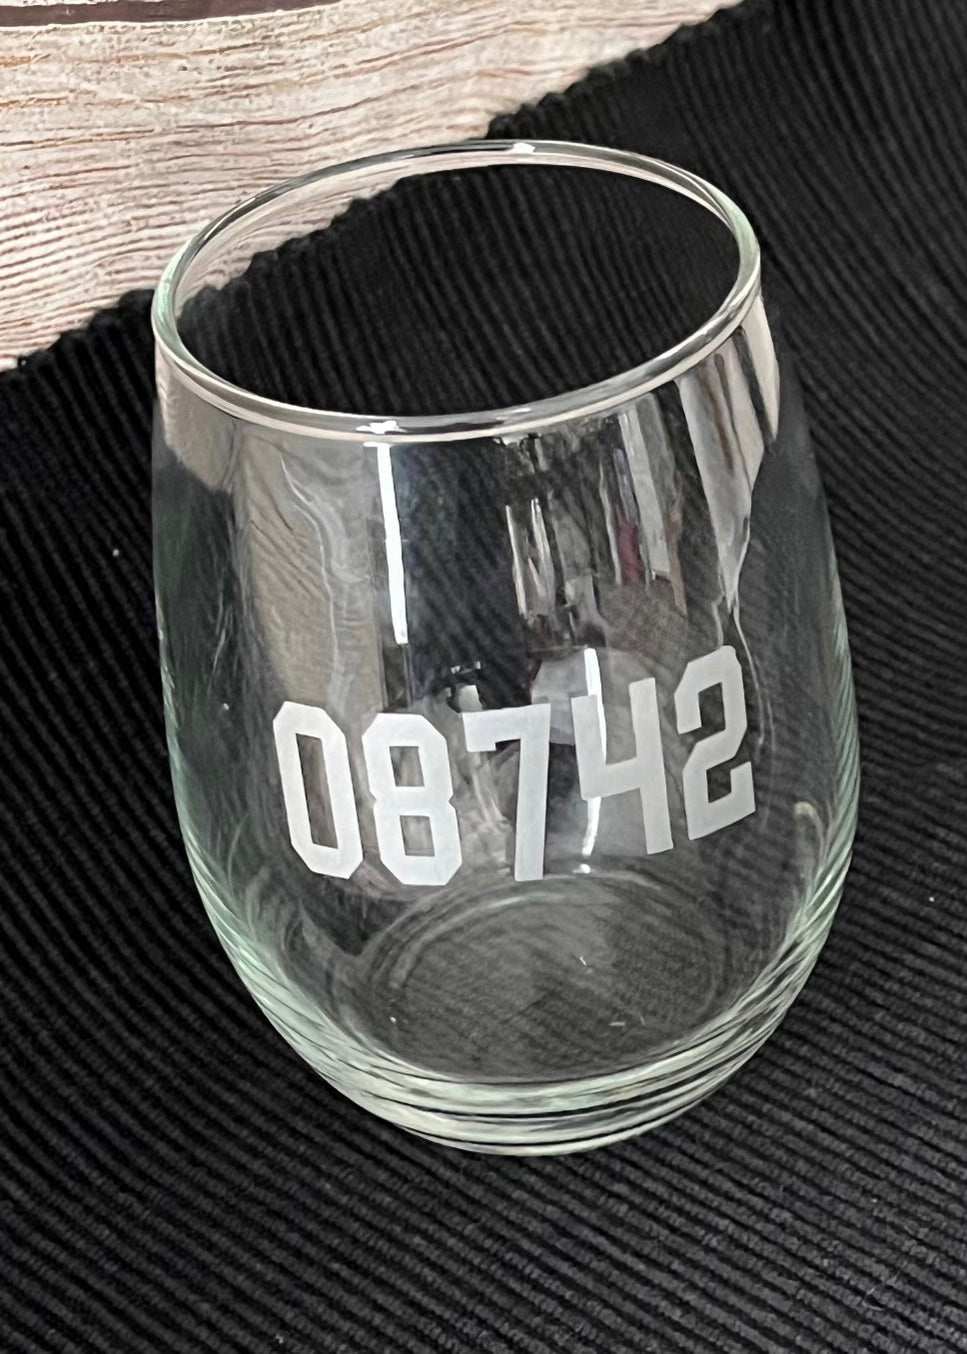 08742 Stemless Wine Glass